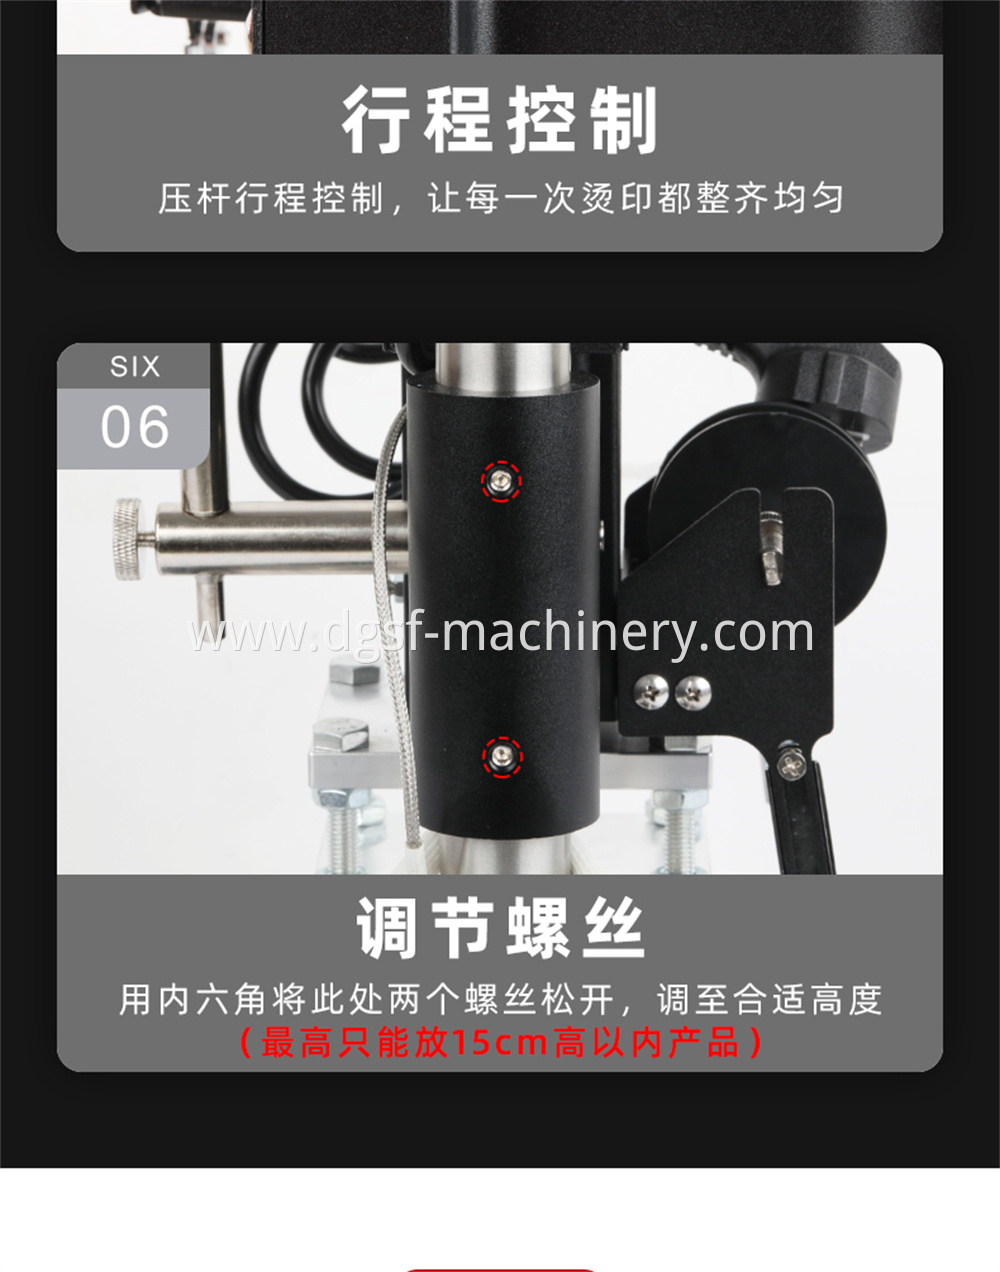 Manual Hot Stamping Machine 12 Jpg